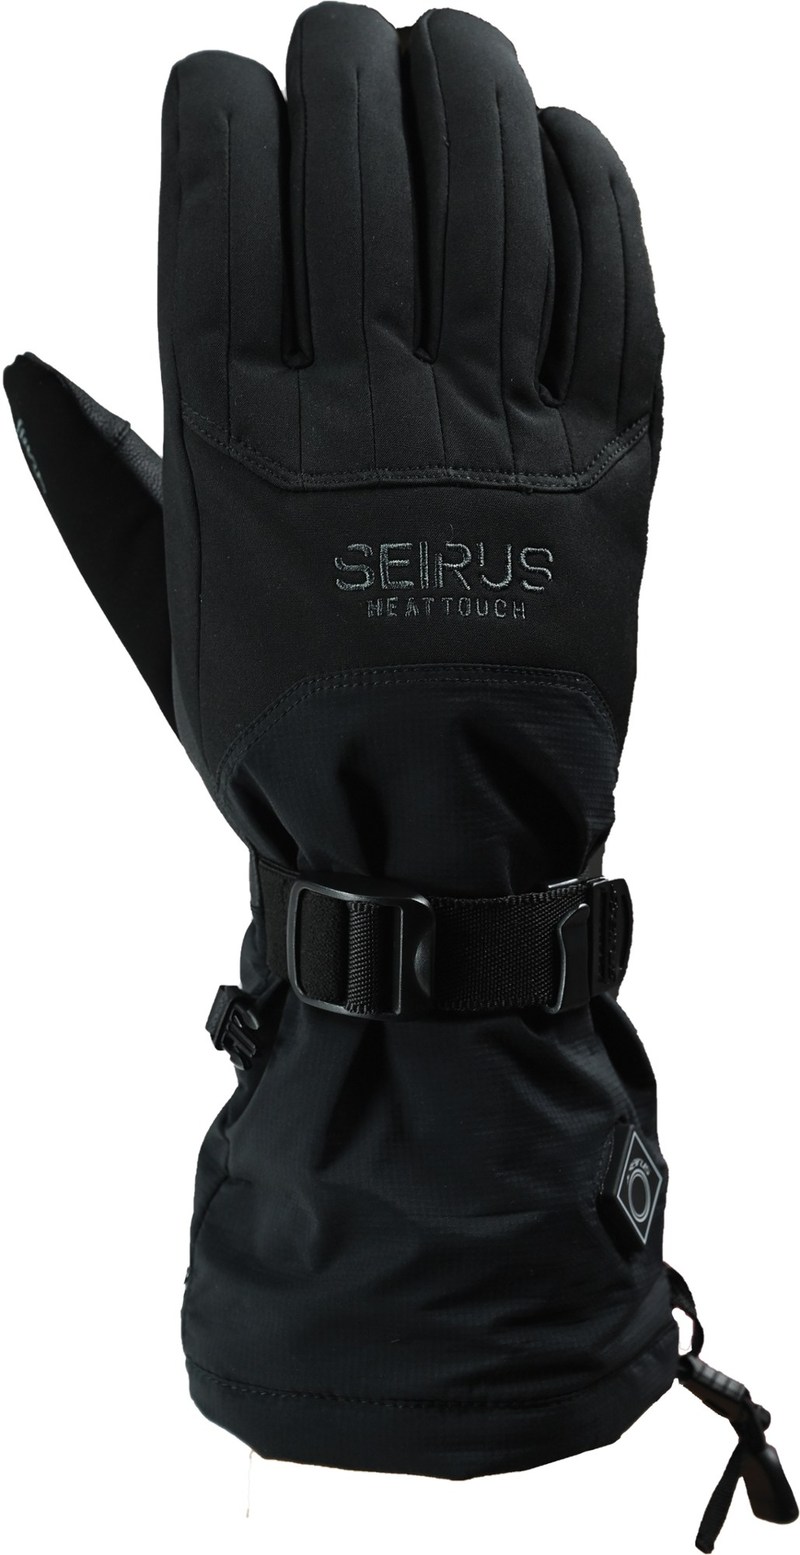 ■ブランド Seirus (セイラス)■商品名 HeatTouch Atlas Gloves - Men's■商品は海外よりお取り寄せの商品となりますので、お届けまで10日-14日前後お時間頂いております。 ■ブランド・商品・デザインによっ...